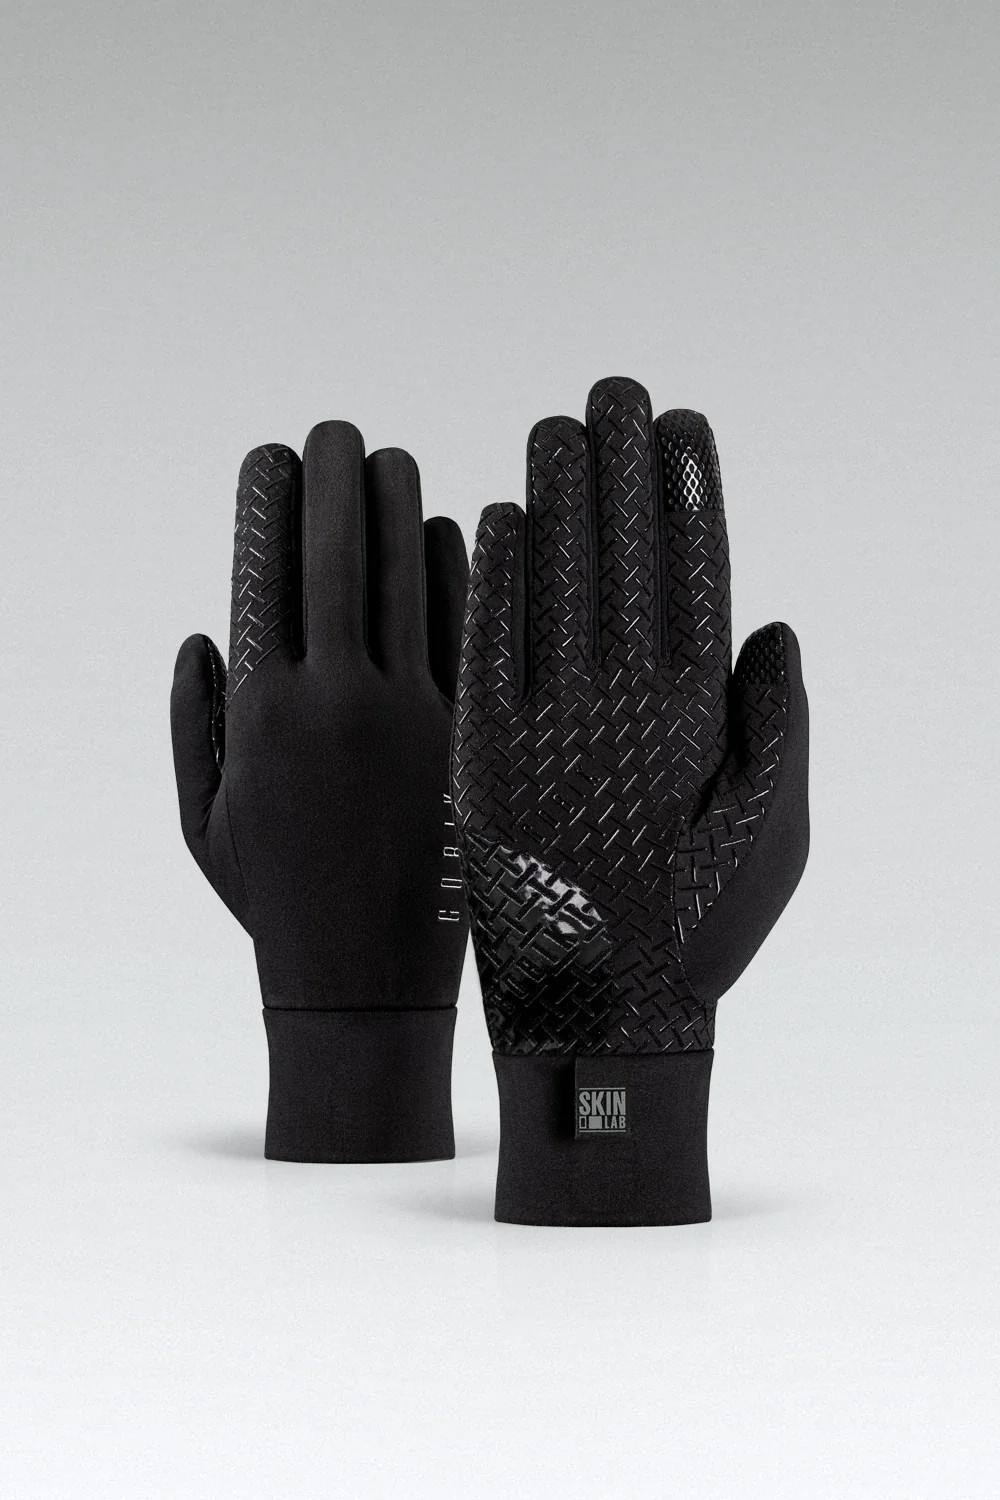 Gobik Finder True Black Light Thermal Gloves | Unisex